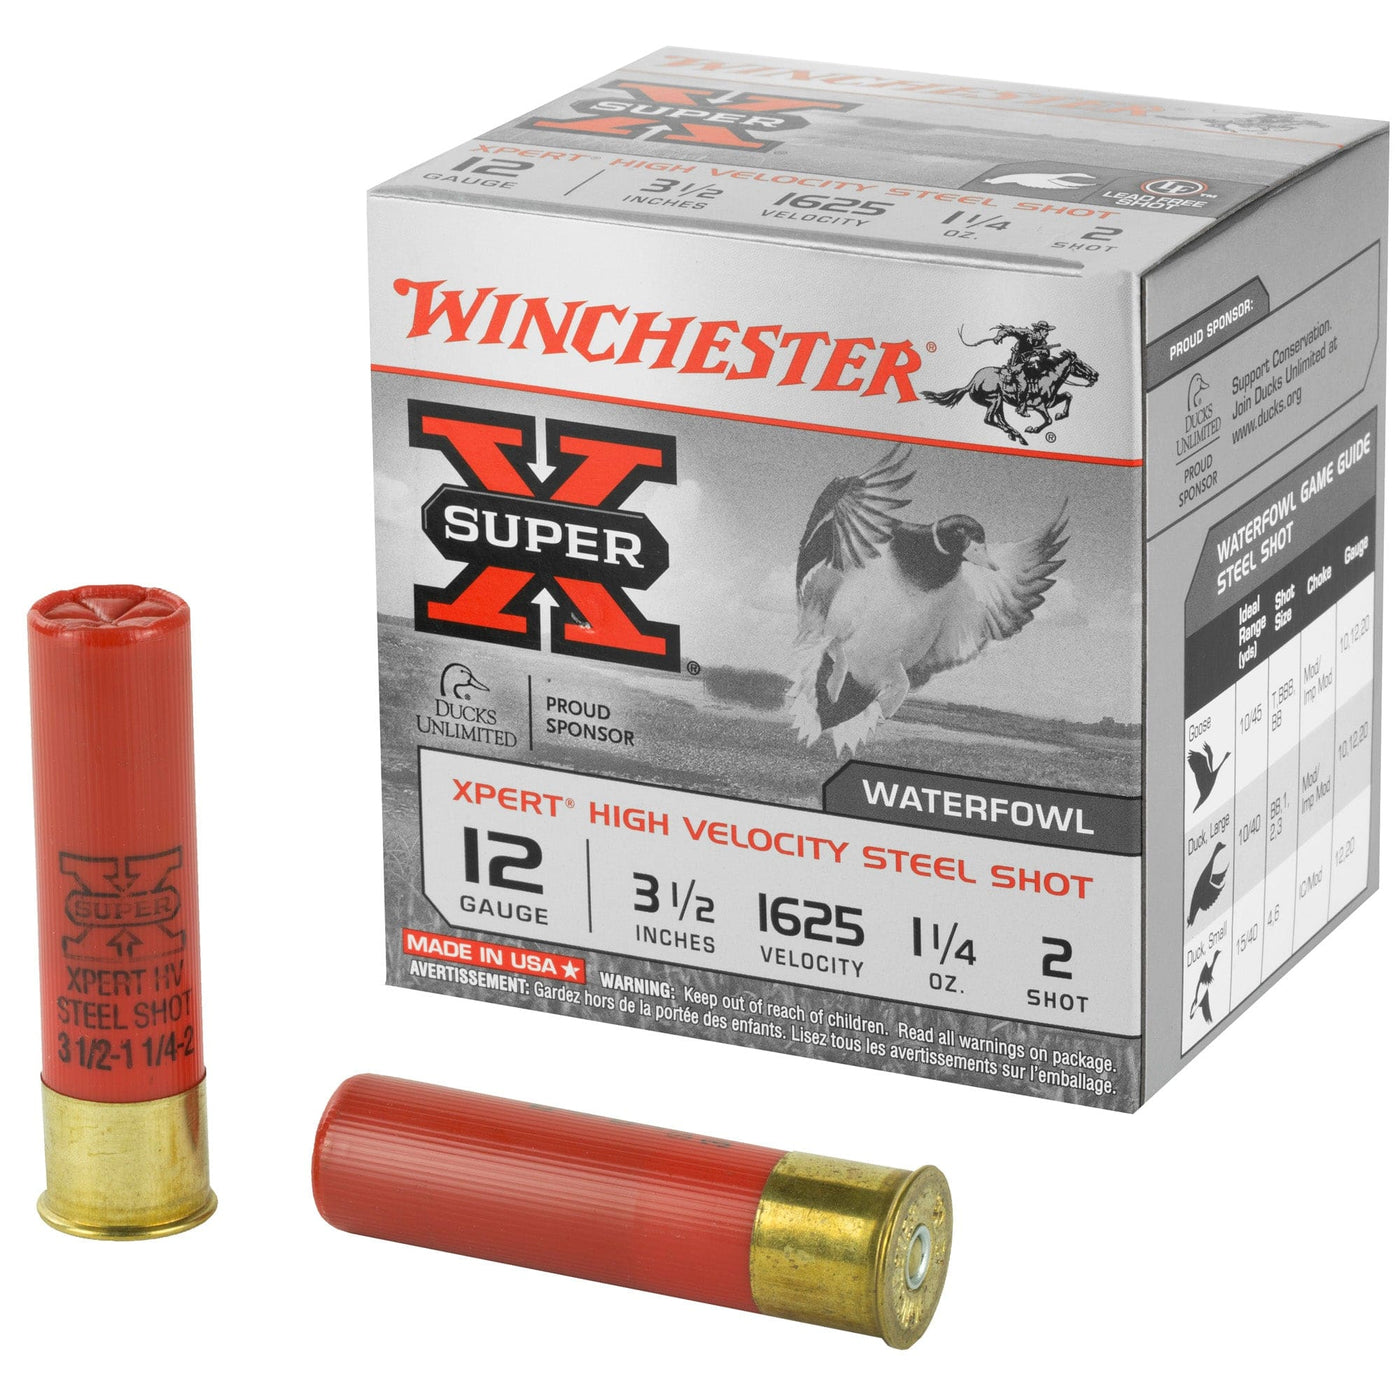 Winchester Ammunition Win Xpert Hv 12ga 3.5" #2 25/250 Ammunition